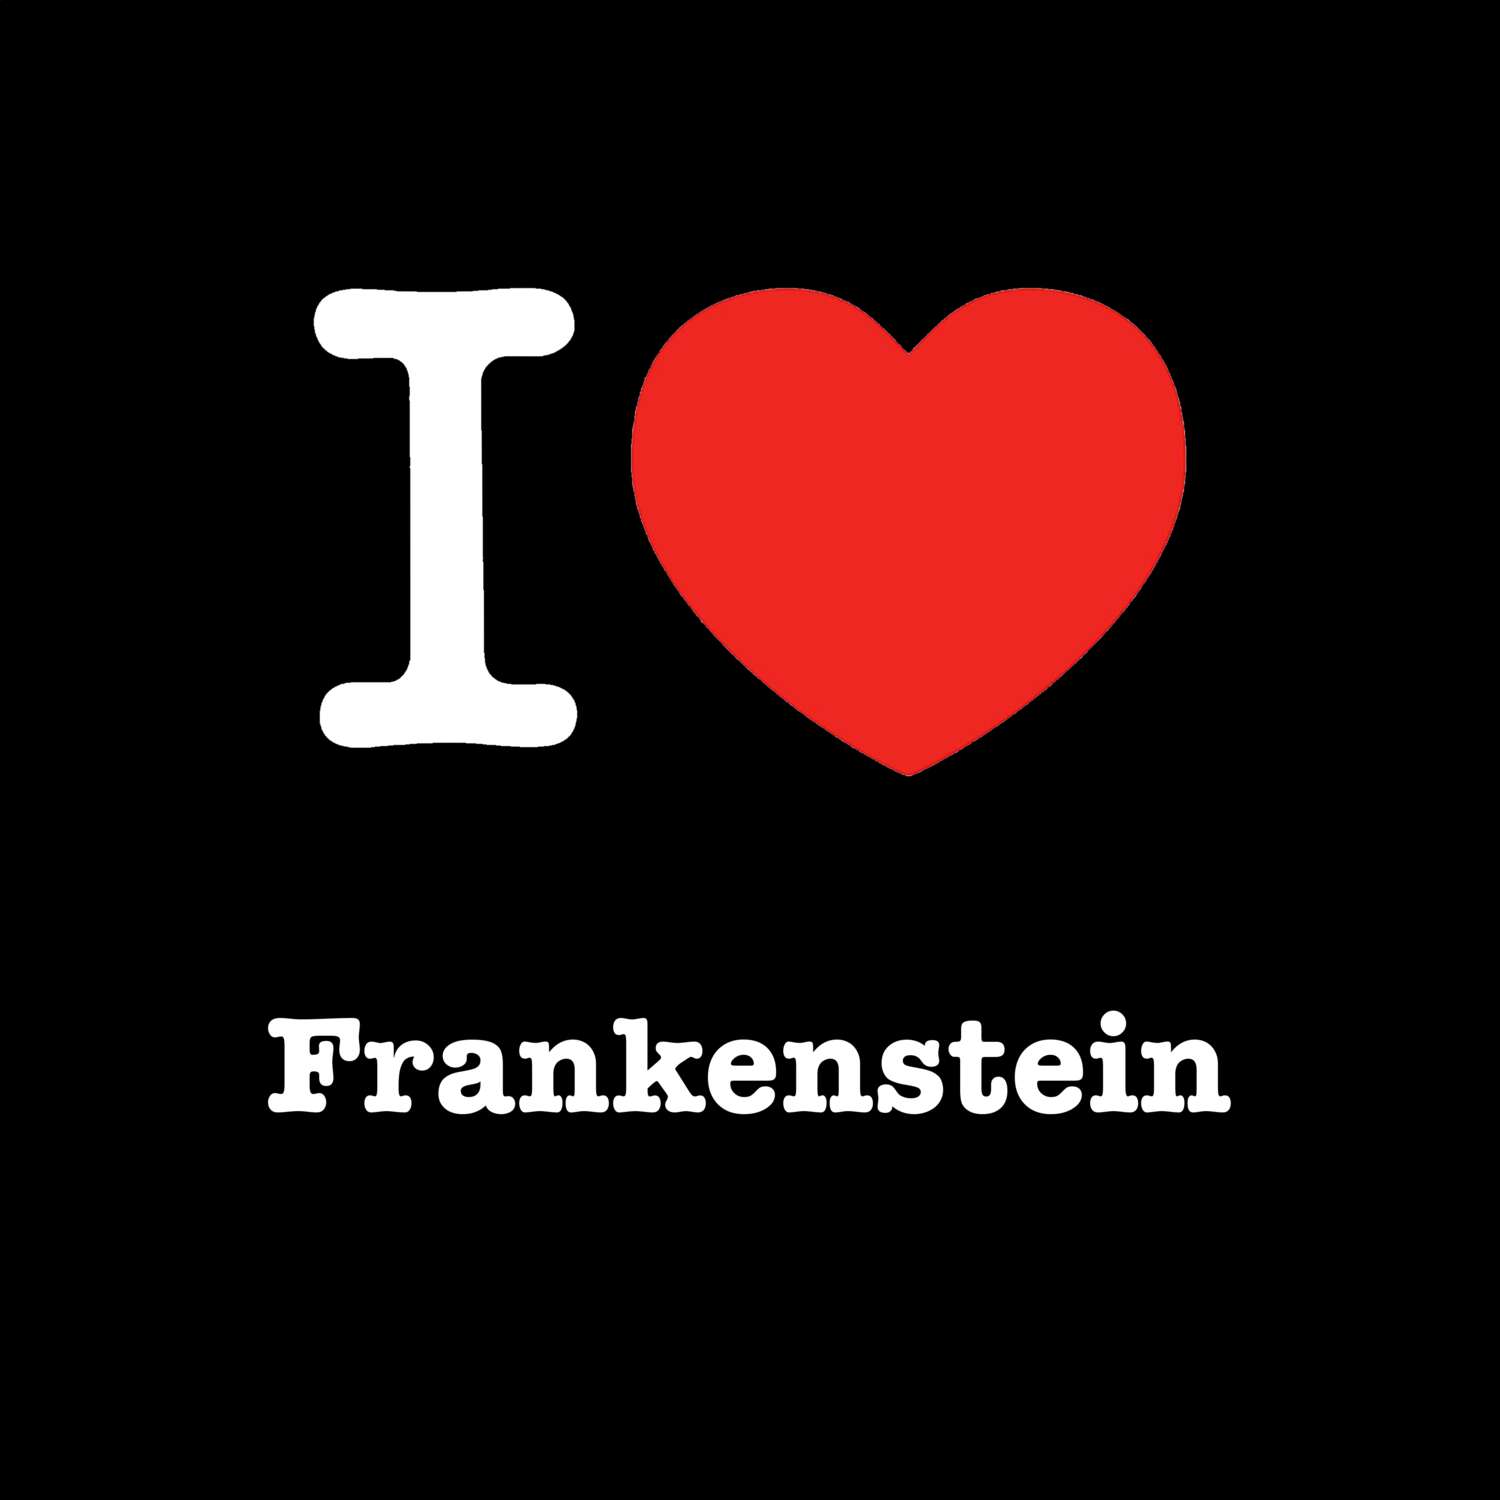 Frankenstein T-Shirt »I love«